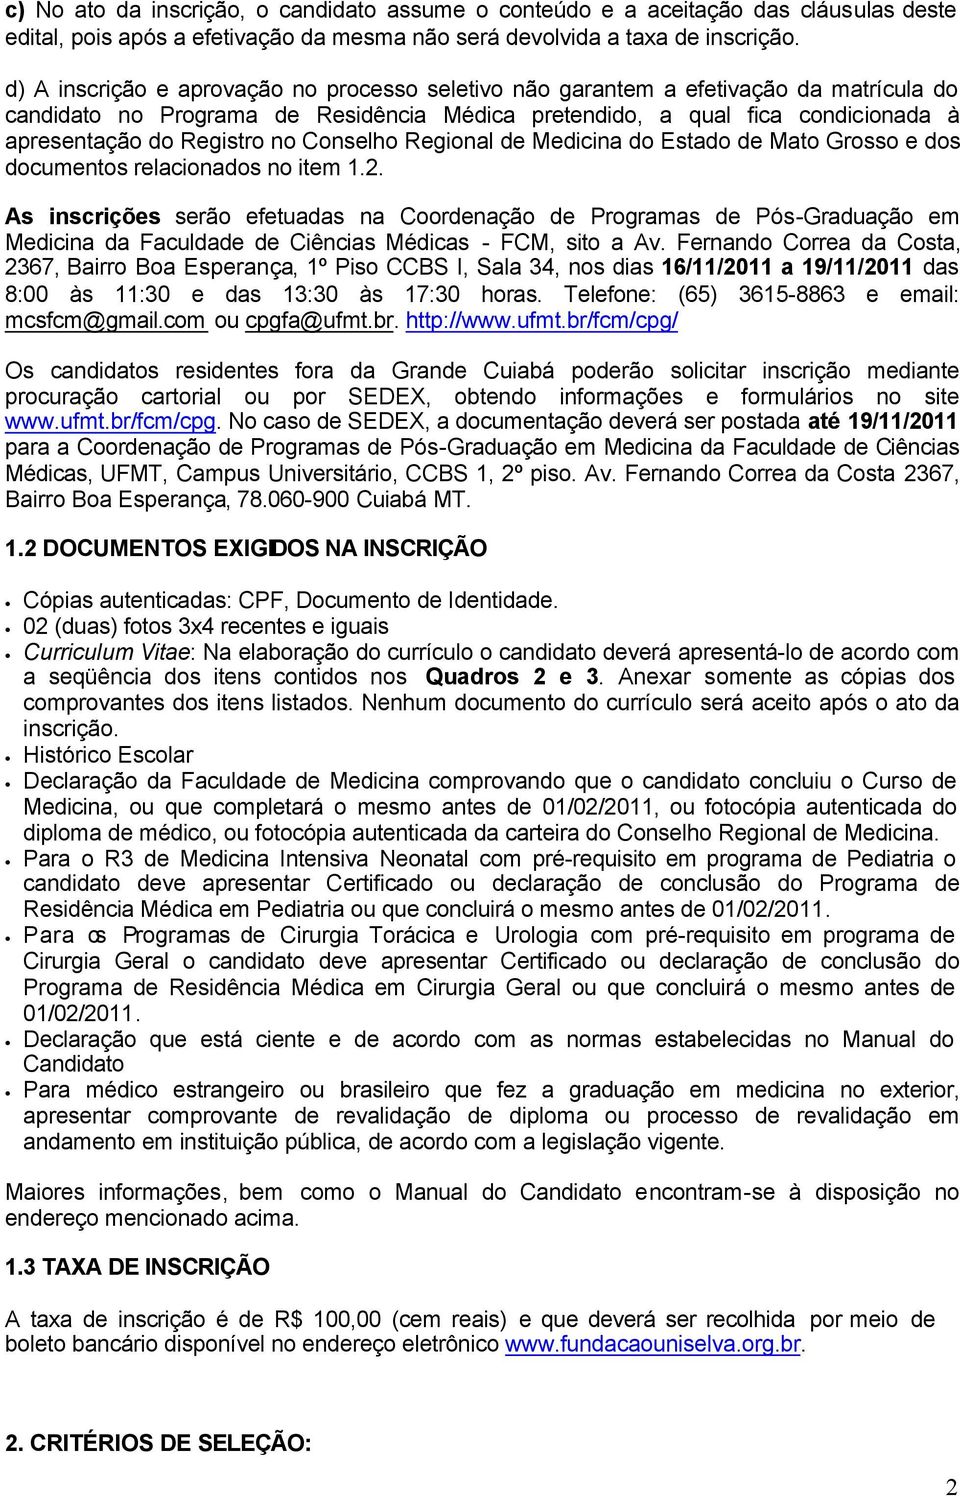 Conselho Regional de Medicina do Estado de Mato Grosso e dos documentos relacionados no item 1.2.